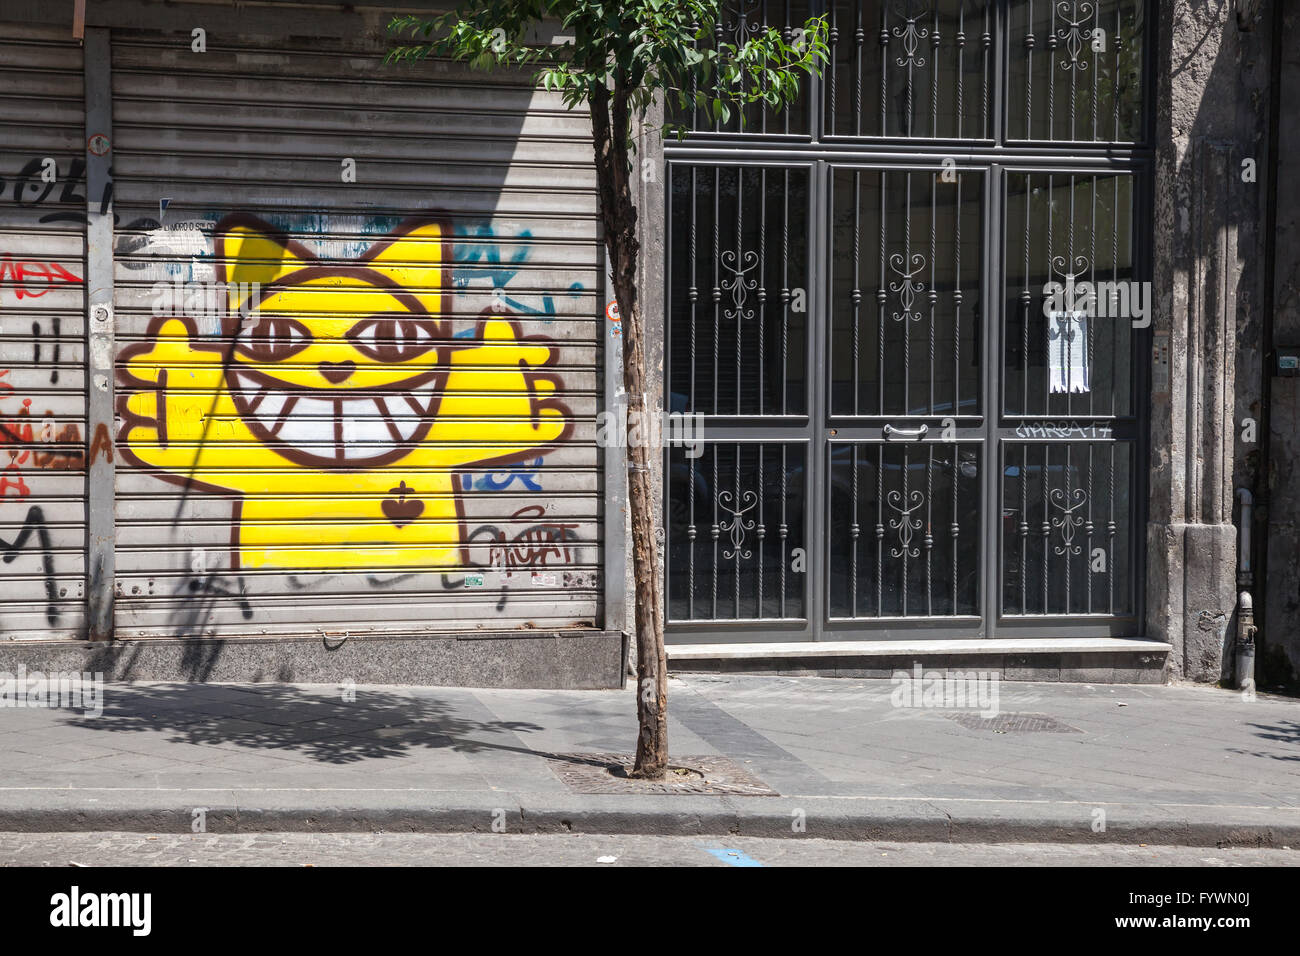 Napoli, Italia - Agosto 9, 2015 ordinario street view con graffiti su serramenti in metallo Foto Stock